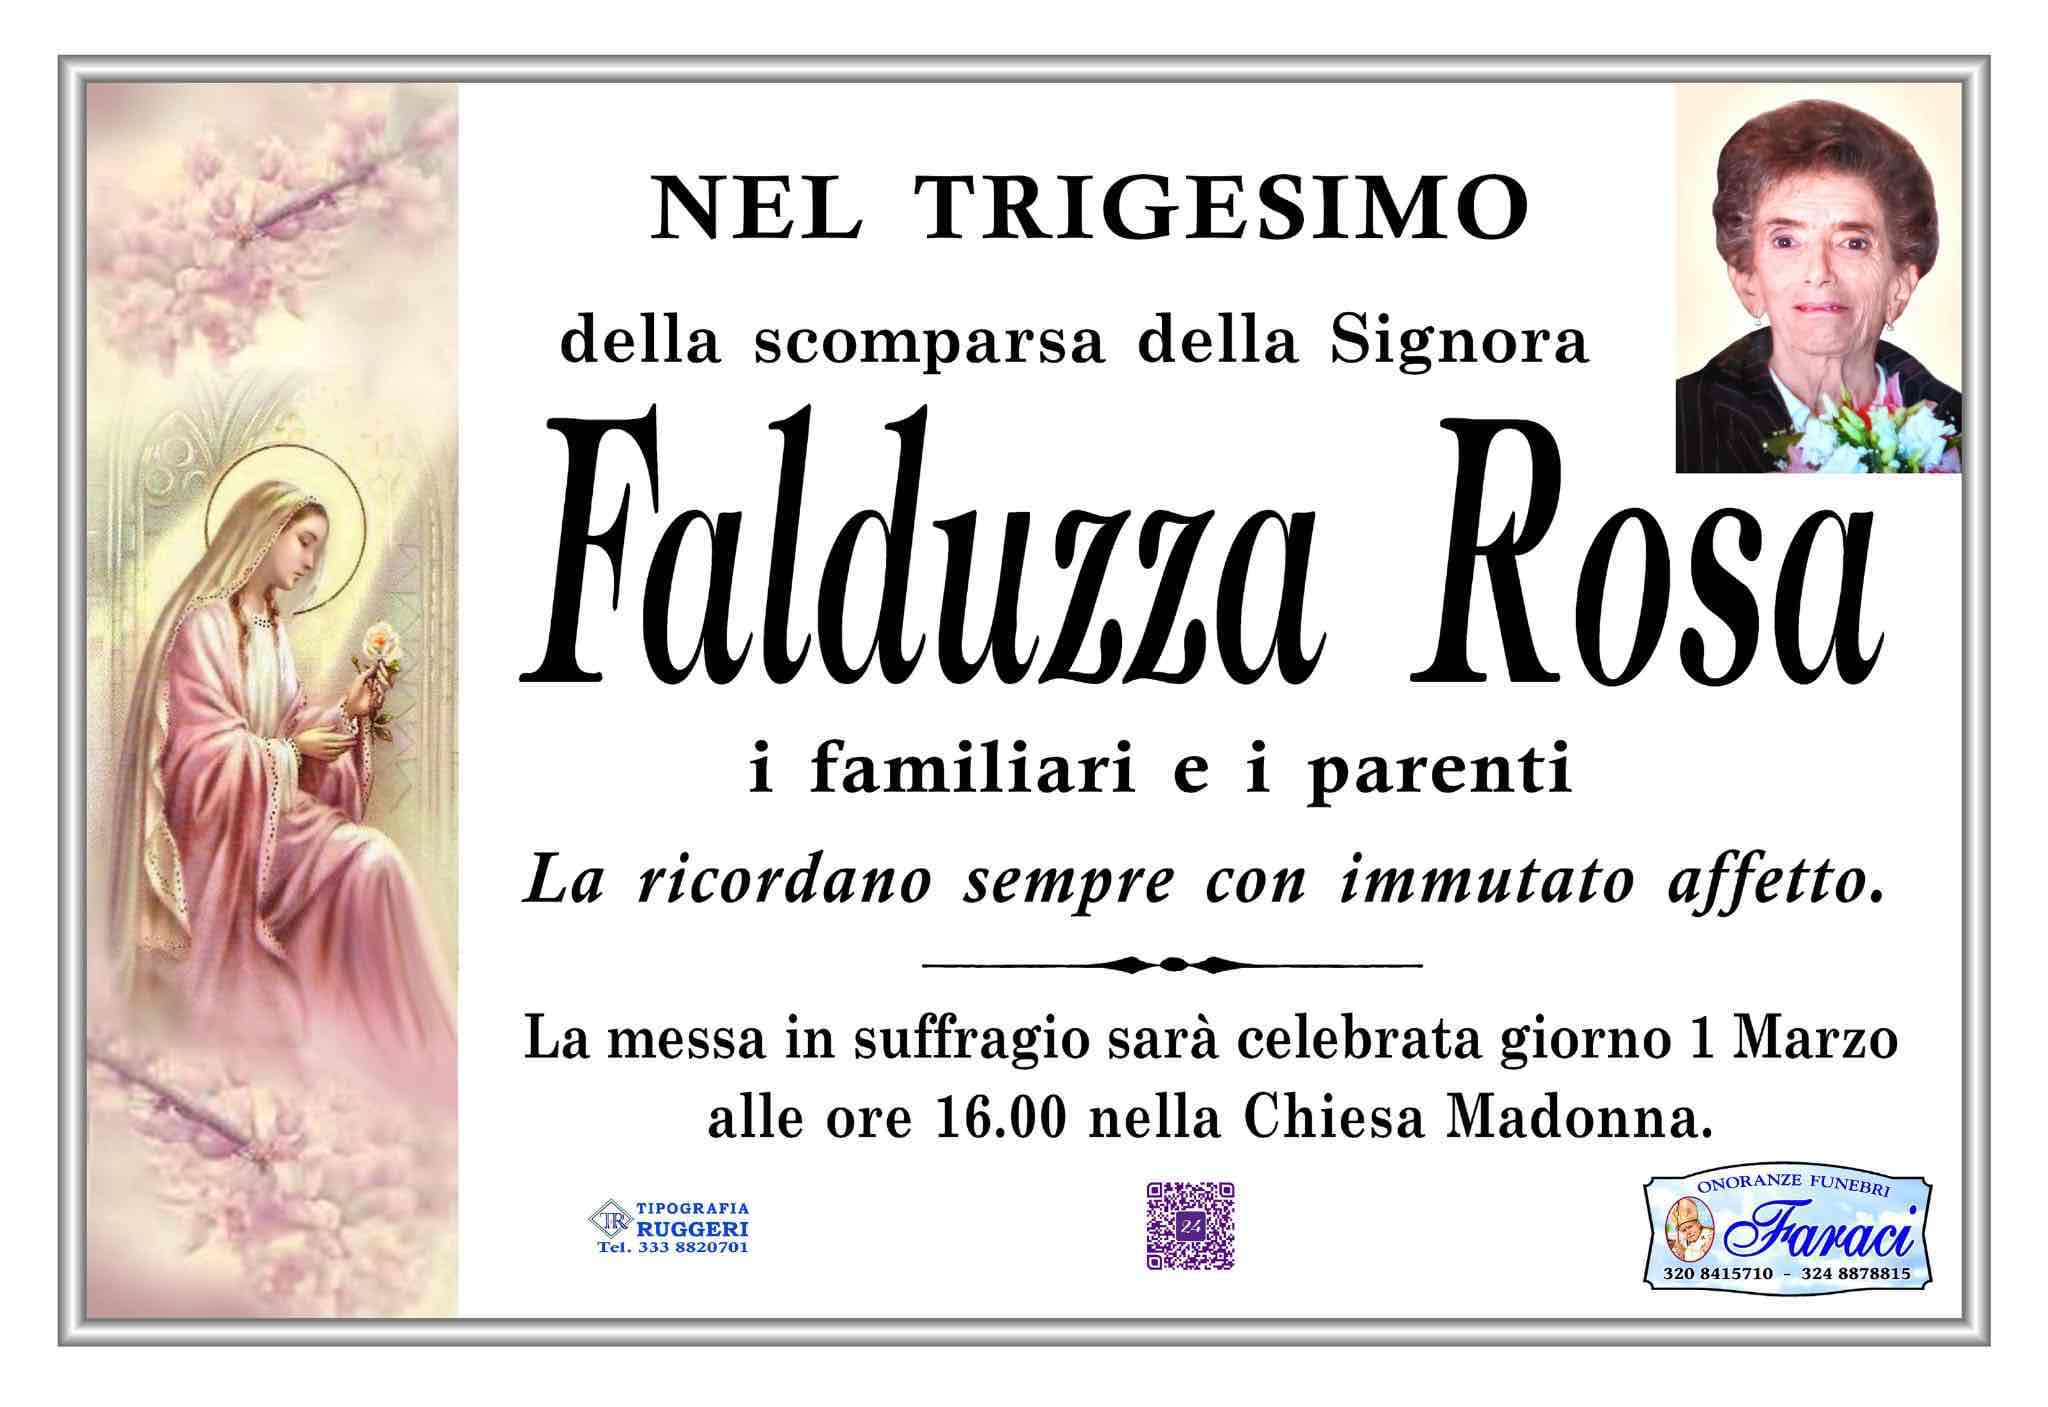 Rosa Falduzza